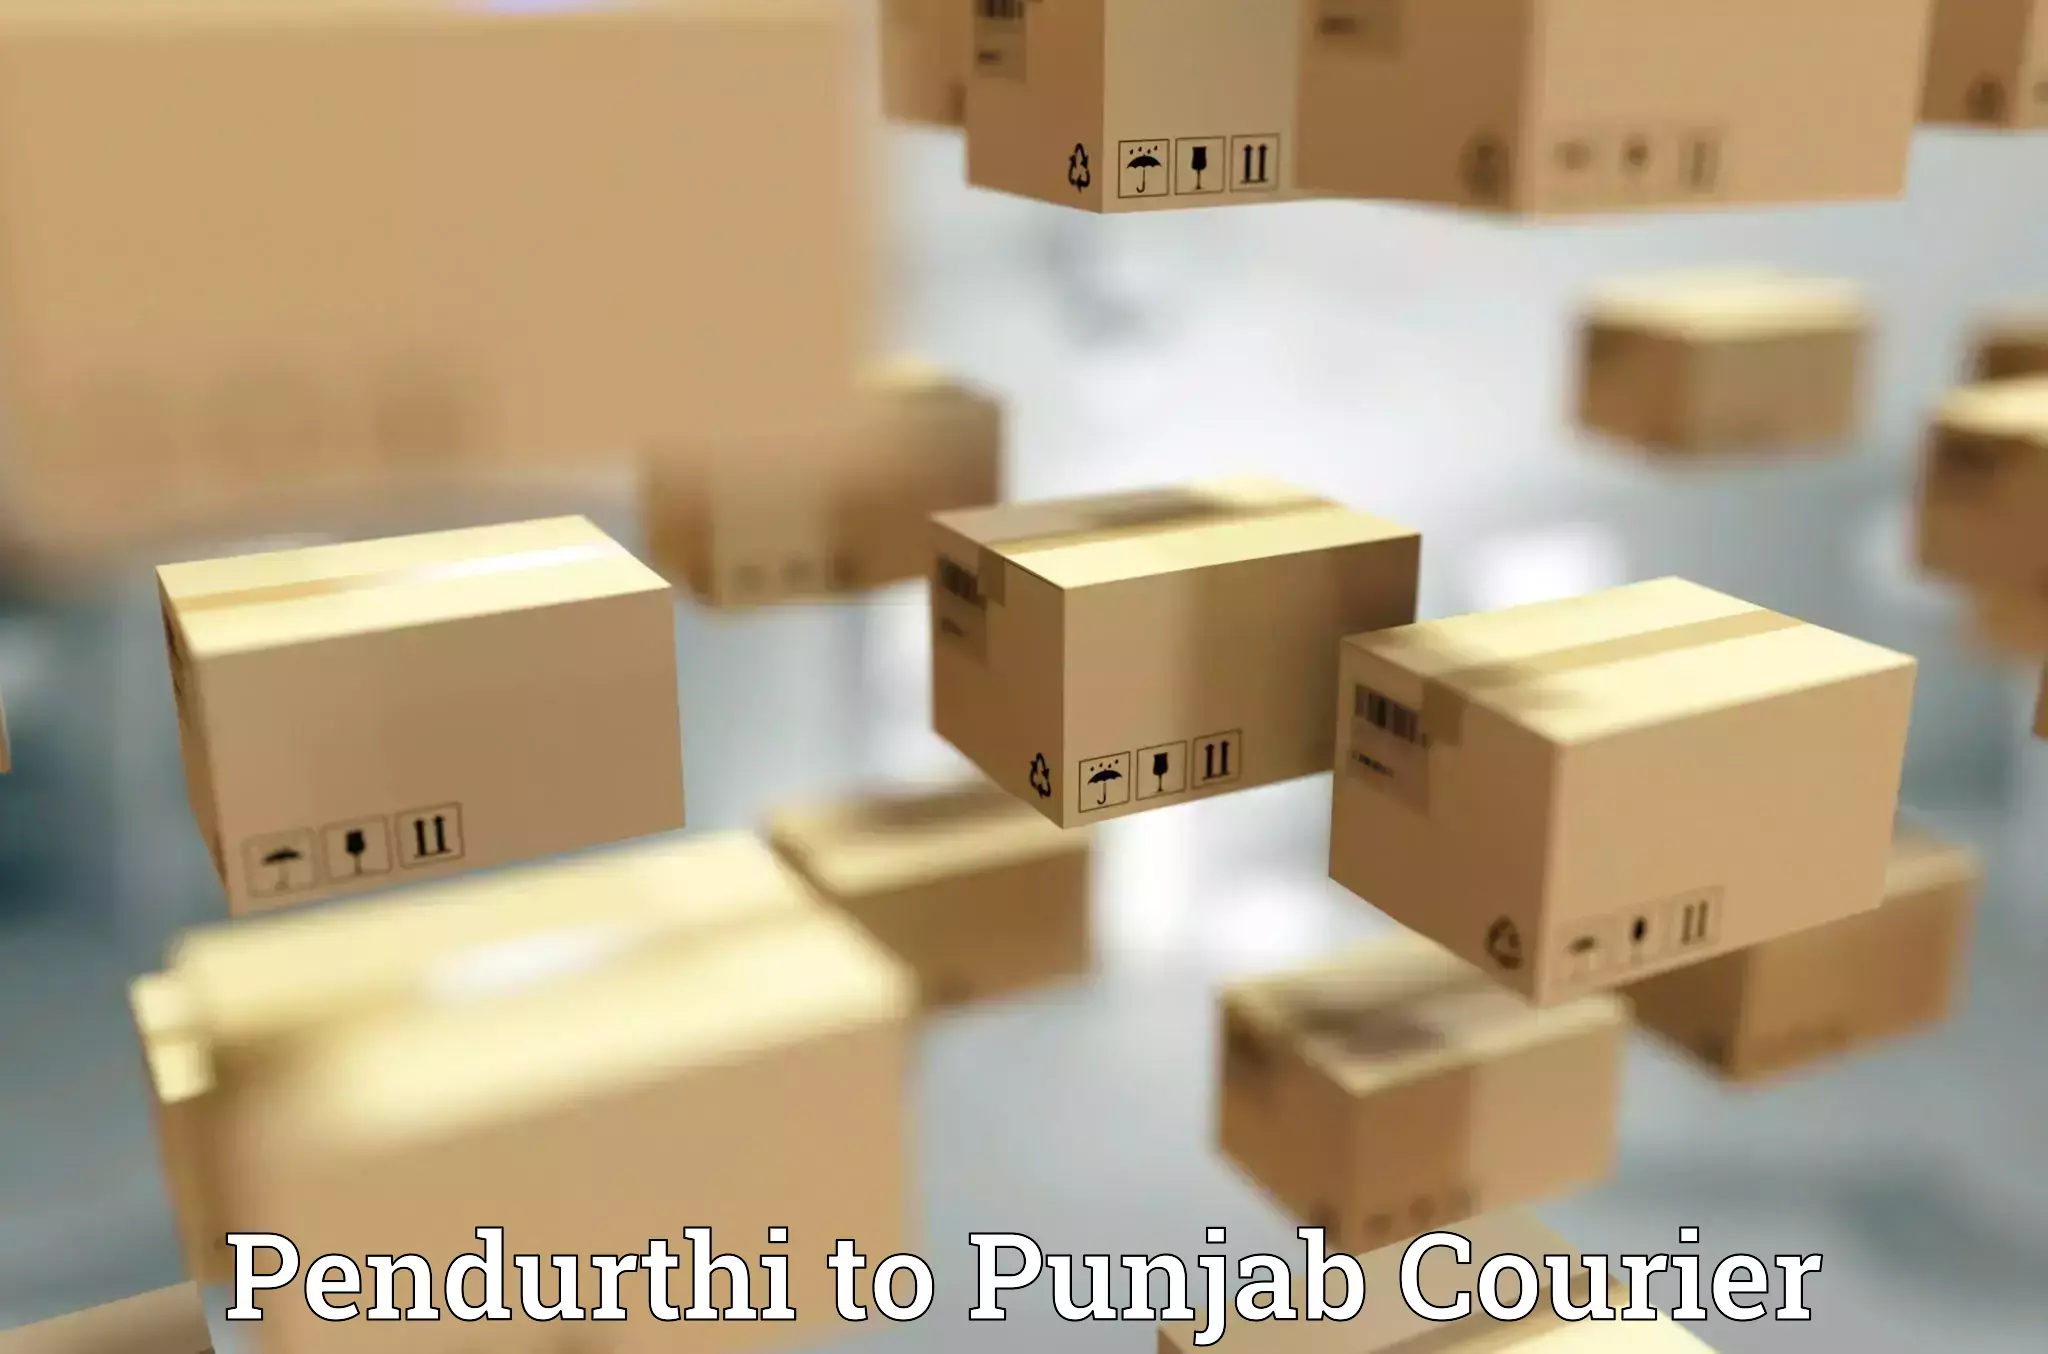 International shipping rates Pendurthi to Punjab